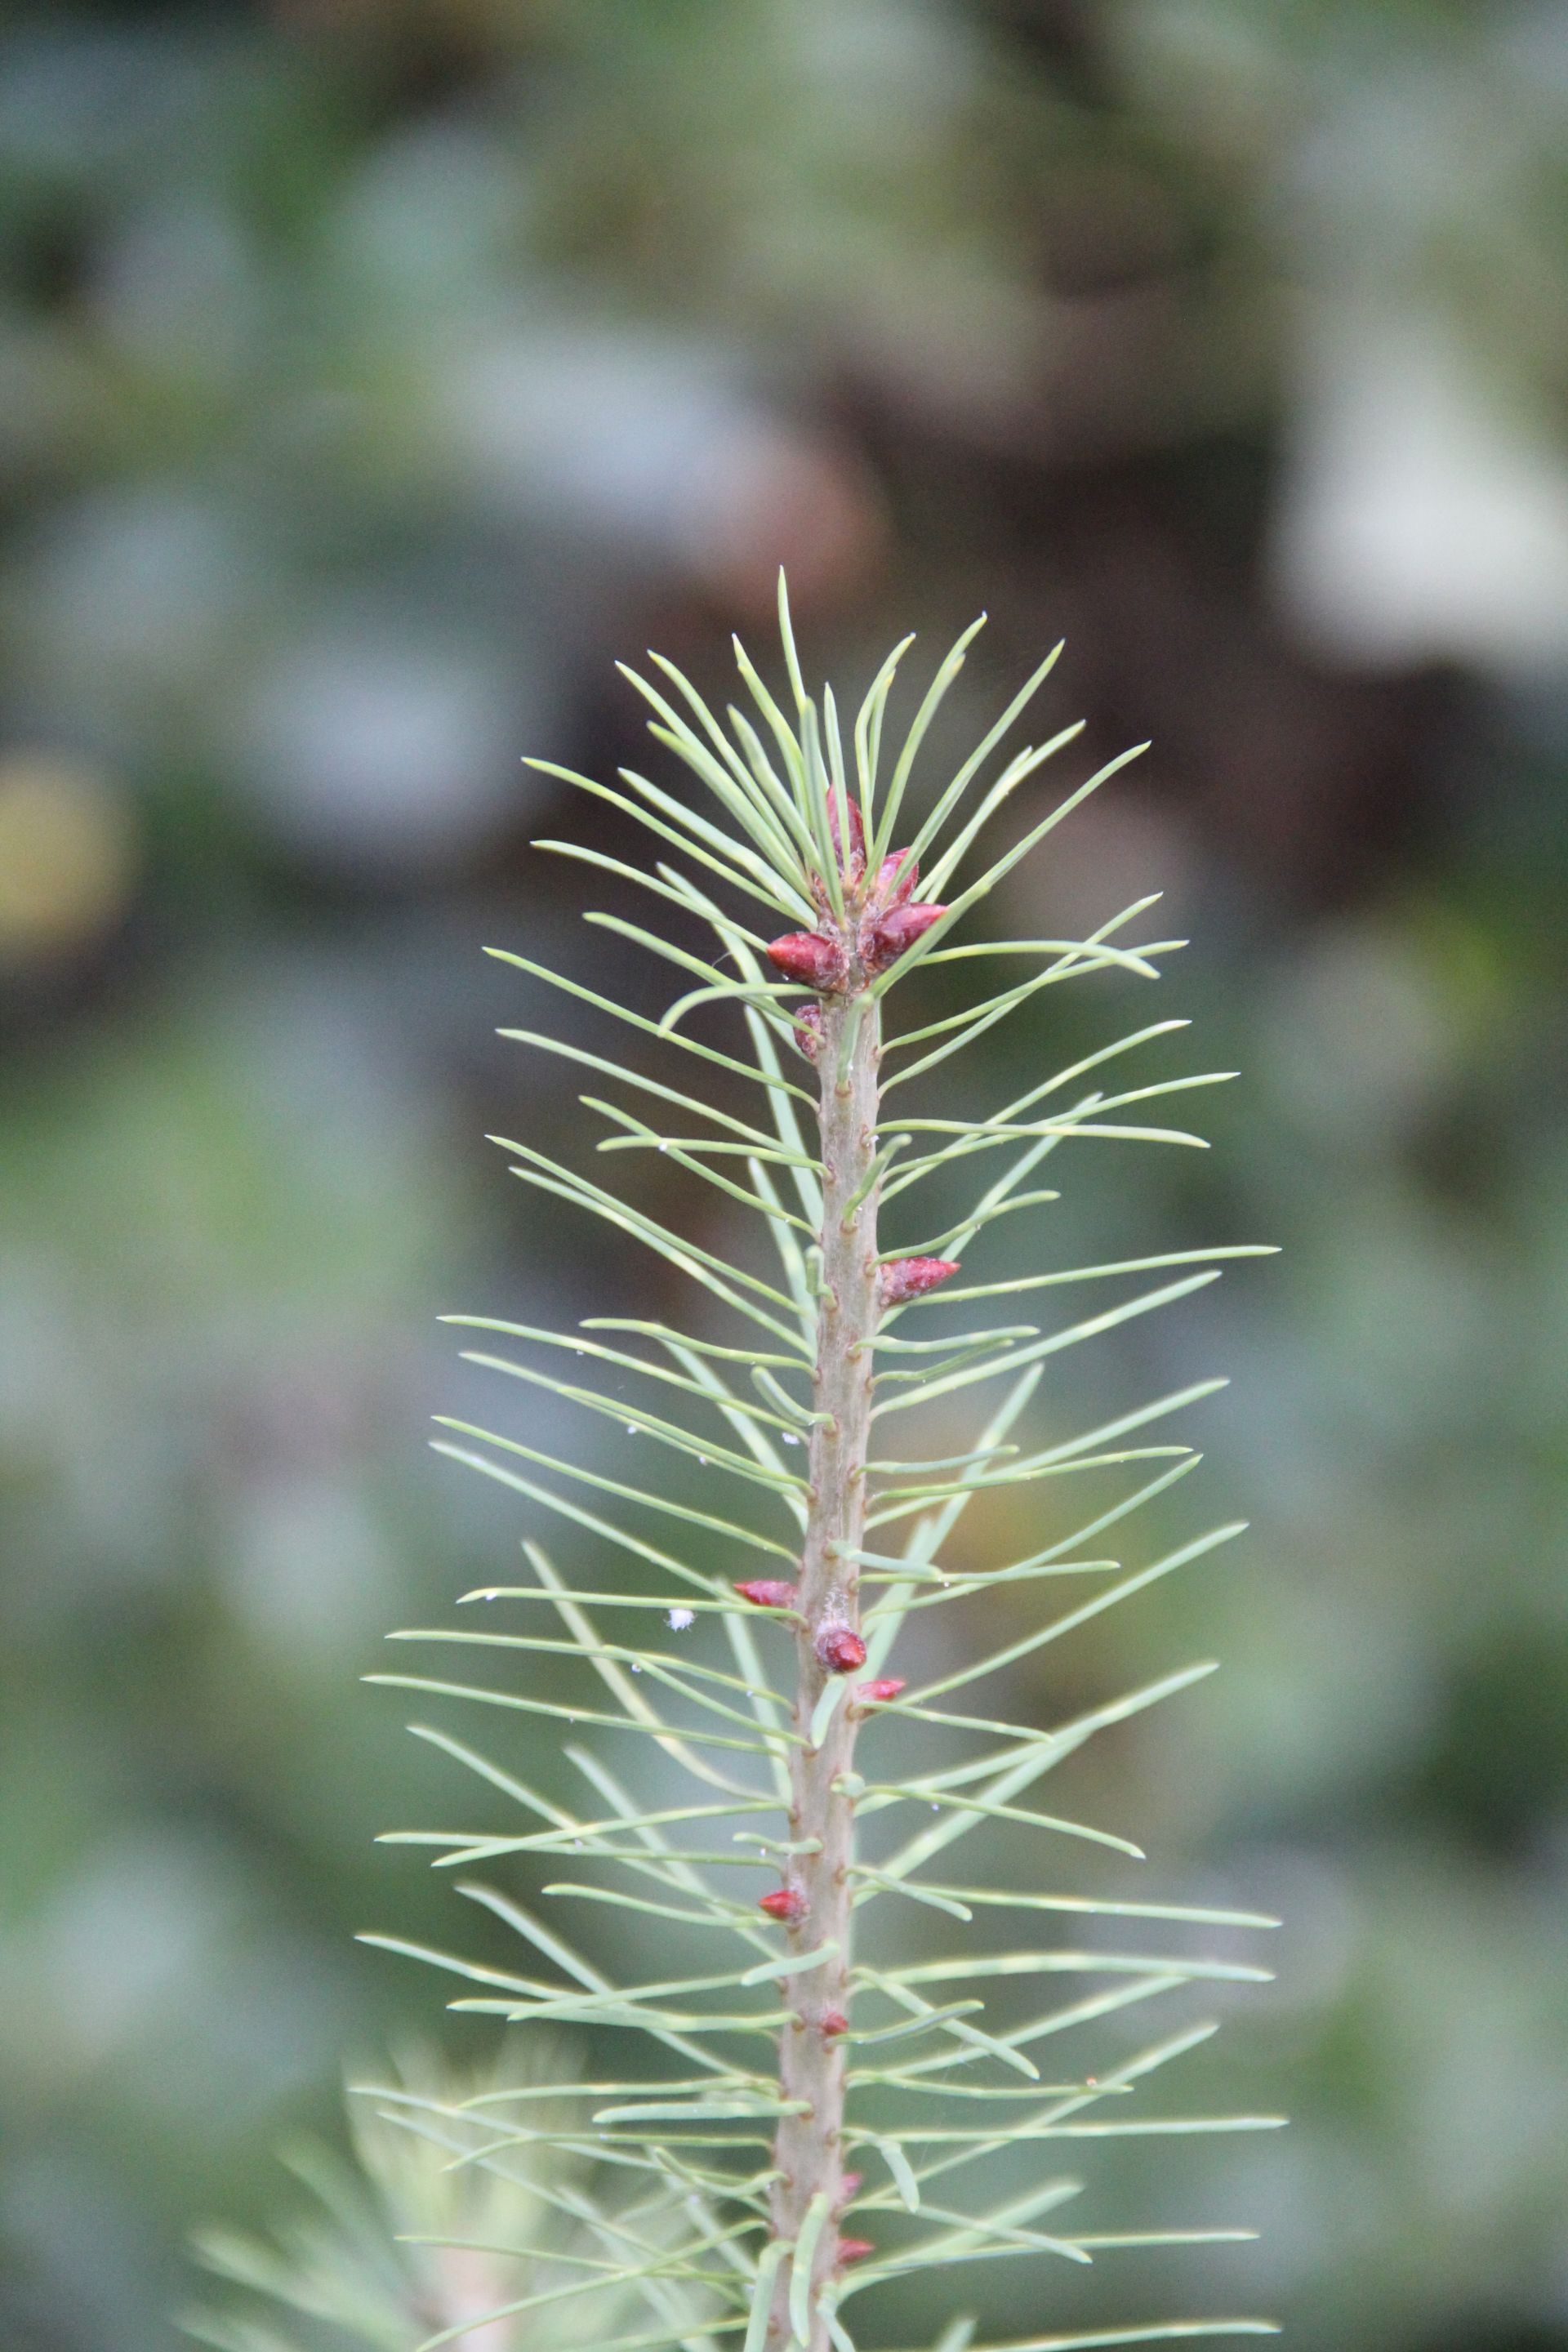 A pine sapling.